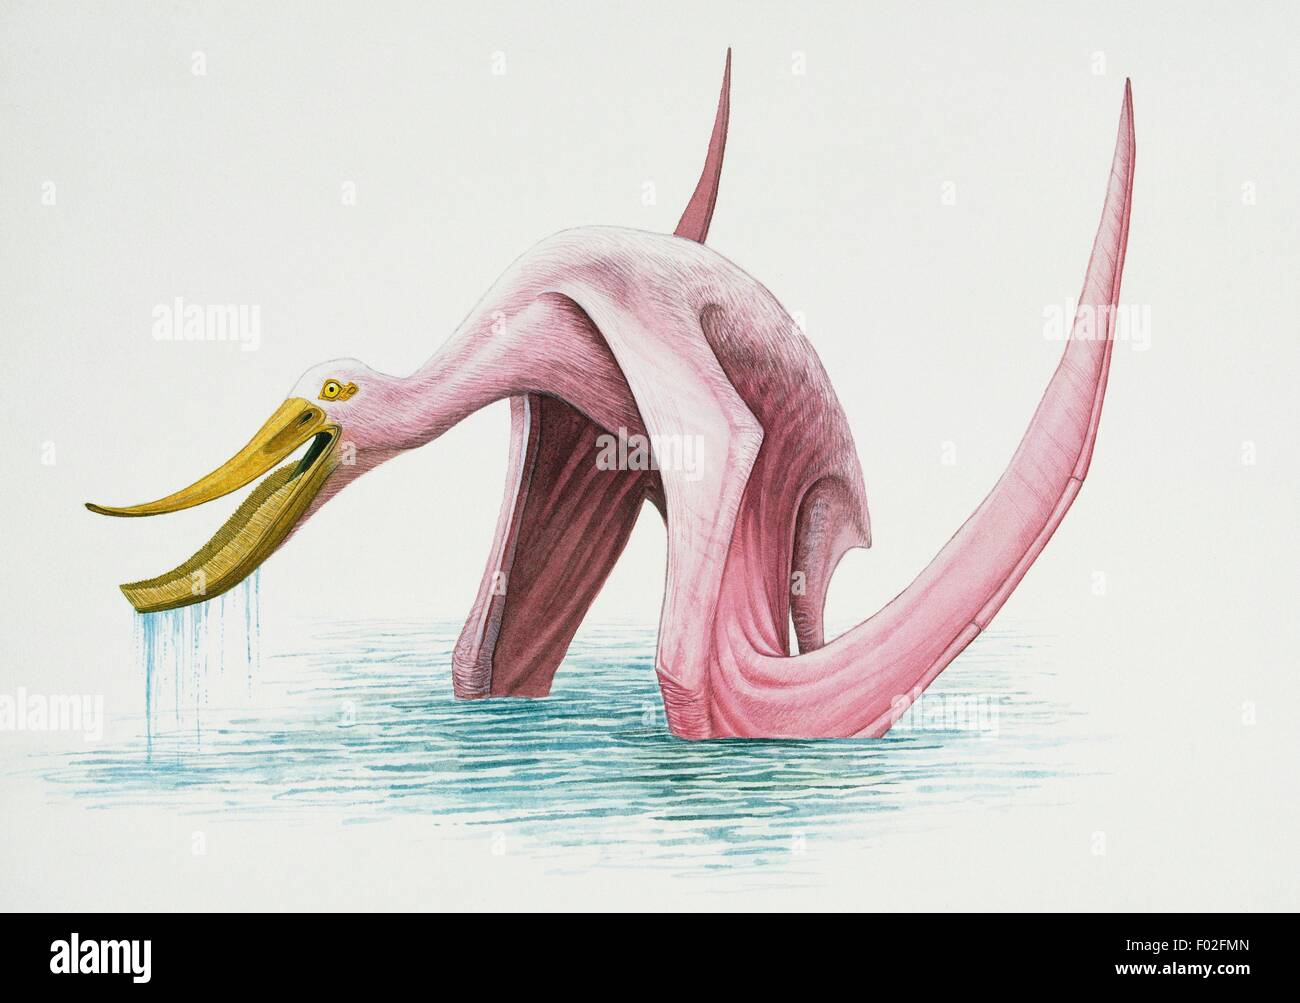 Pterodaustro guinazui, Pterodaustridae, début du Crétacé. Artwork by Higgins. Banque D'Images